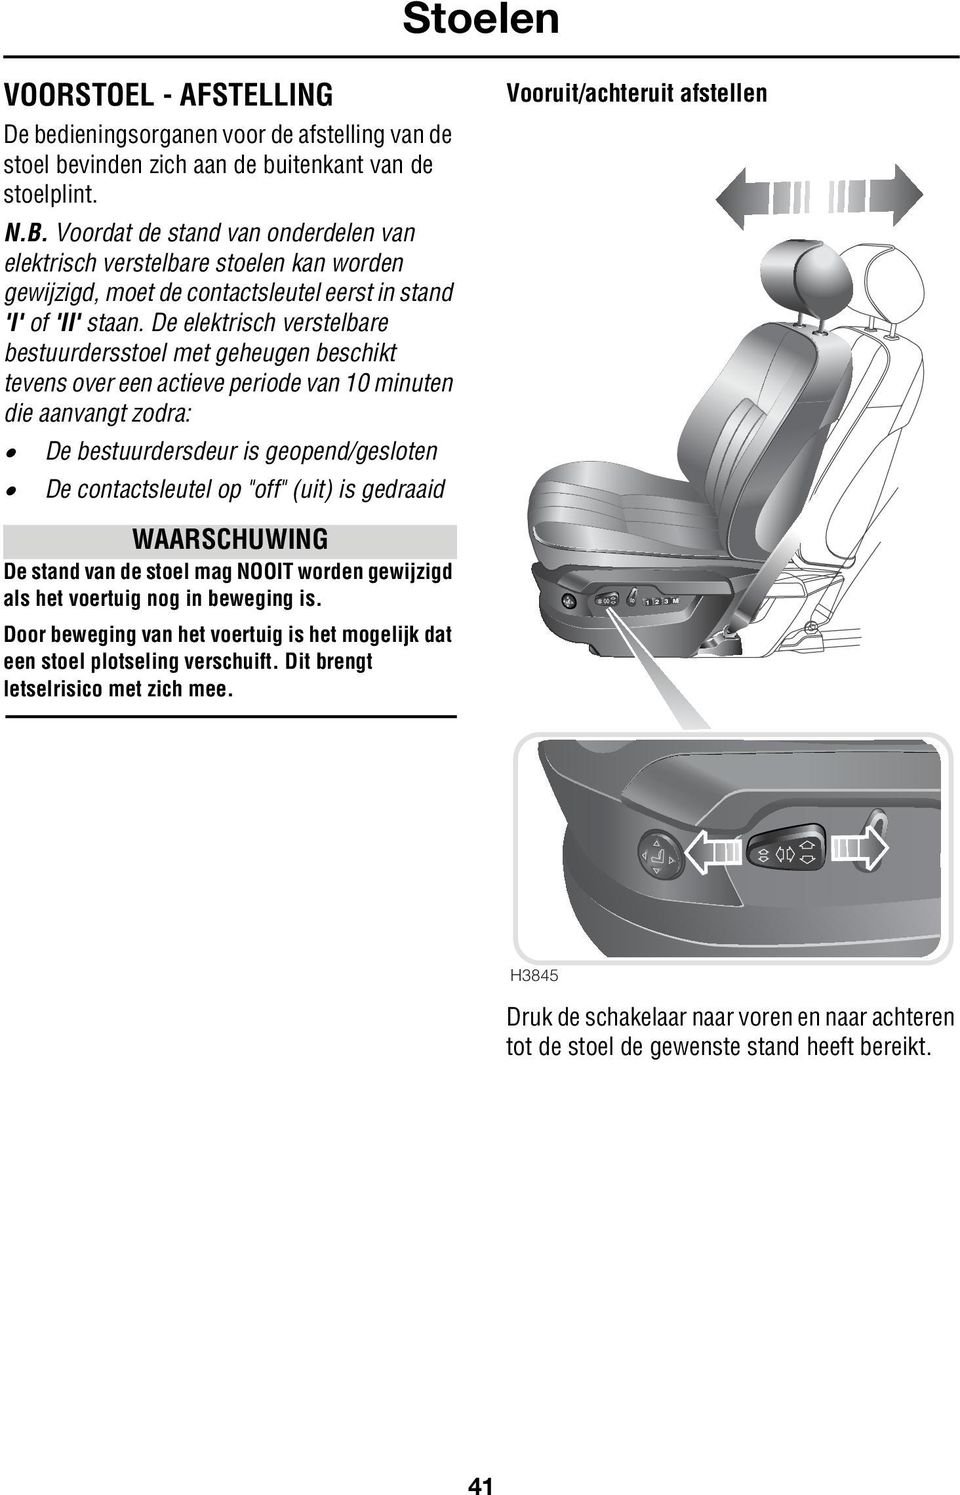 De elektrisch verstelbare bestuurdersstoel met geheugen beschikt tevens over een actieve periode van 10 minuten die aanvangt zodra: De bestuurdersdeur is geopend/gesloten De contactsleutel op "off"